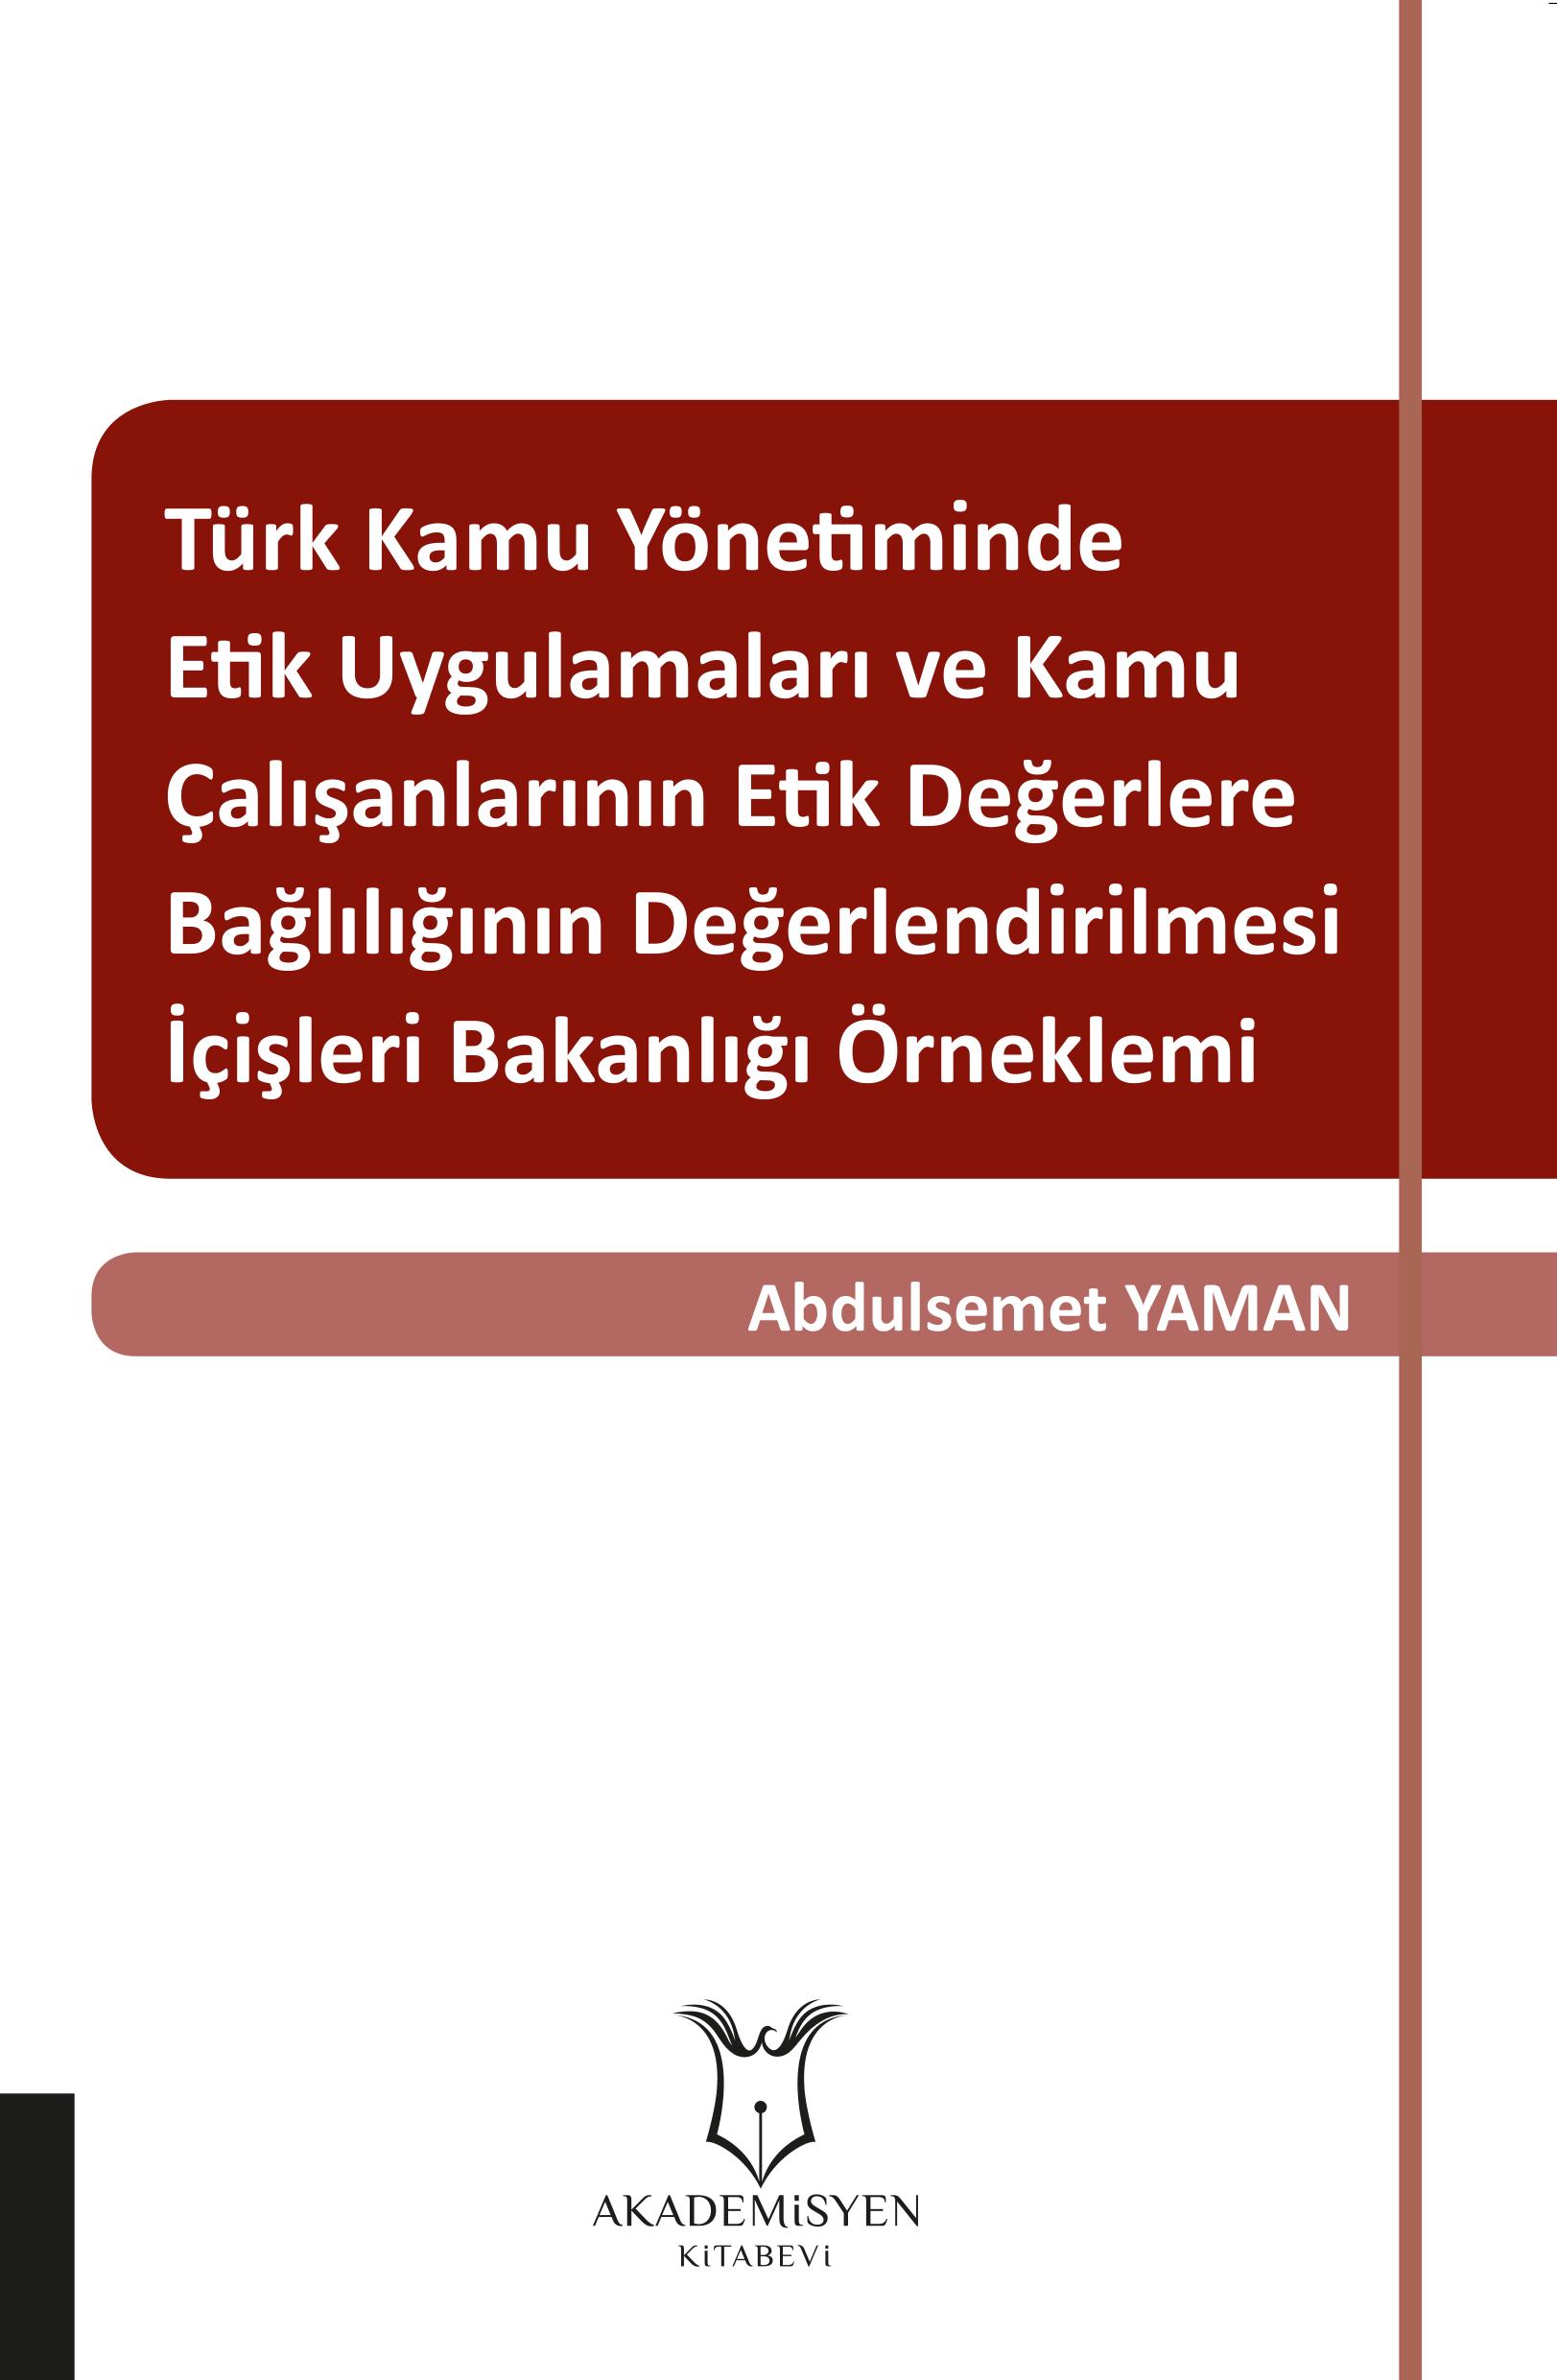 Türk Kamu Yönetiminde Etik Uygulamaları ve Kamu Çalışanlarının Etik Değerlere Bağlılığının Değerlendirilmesi